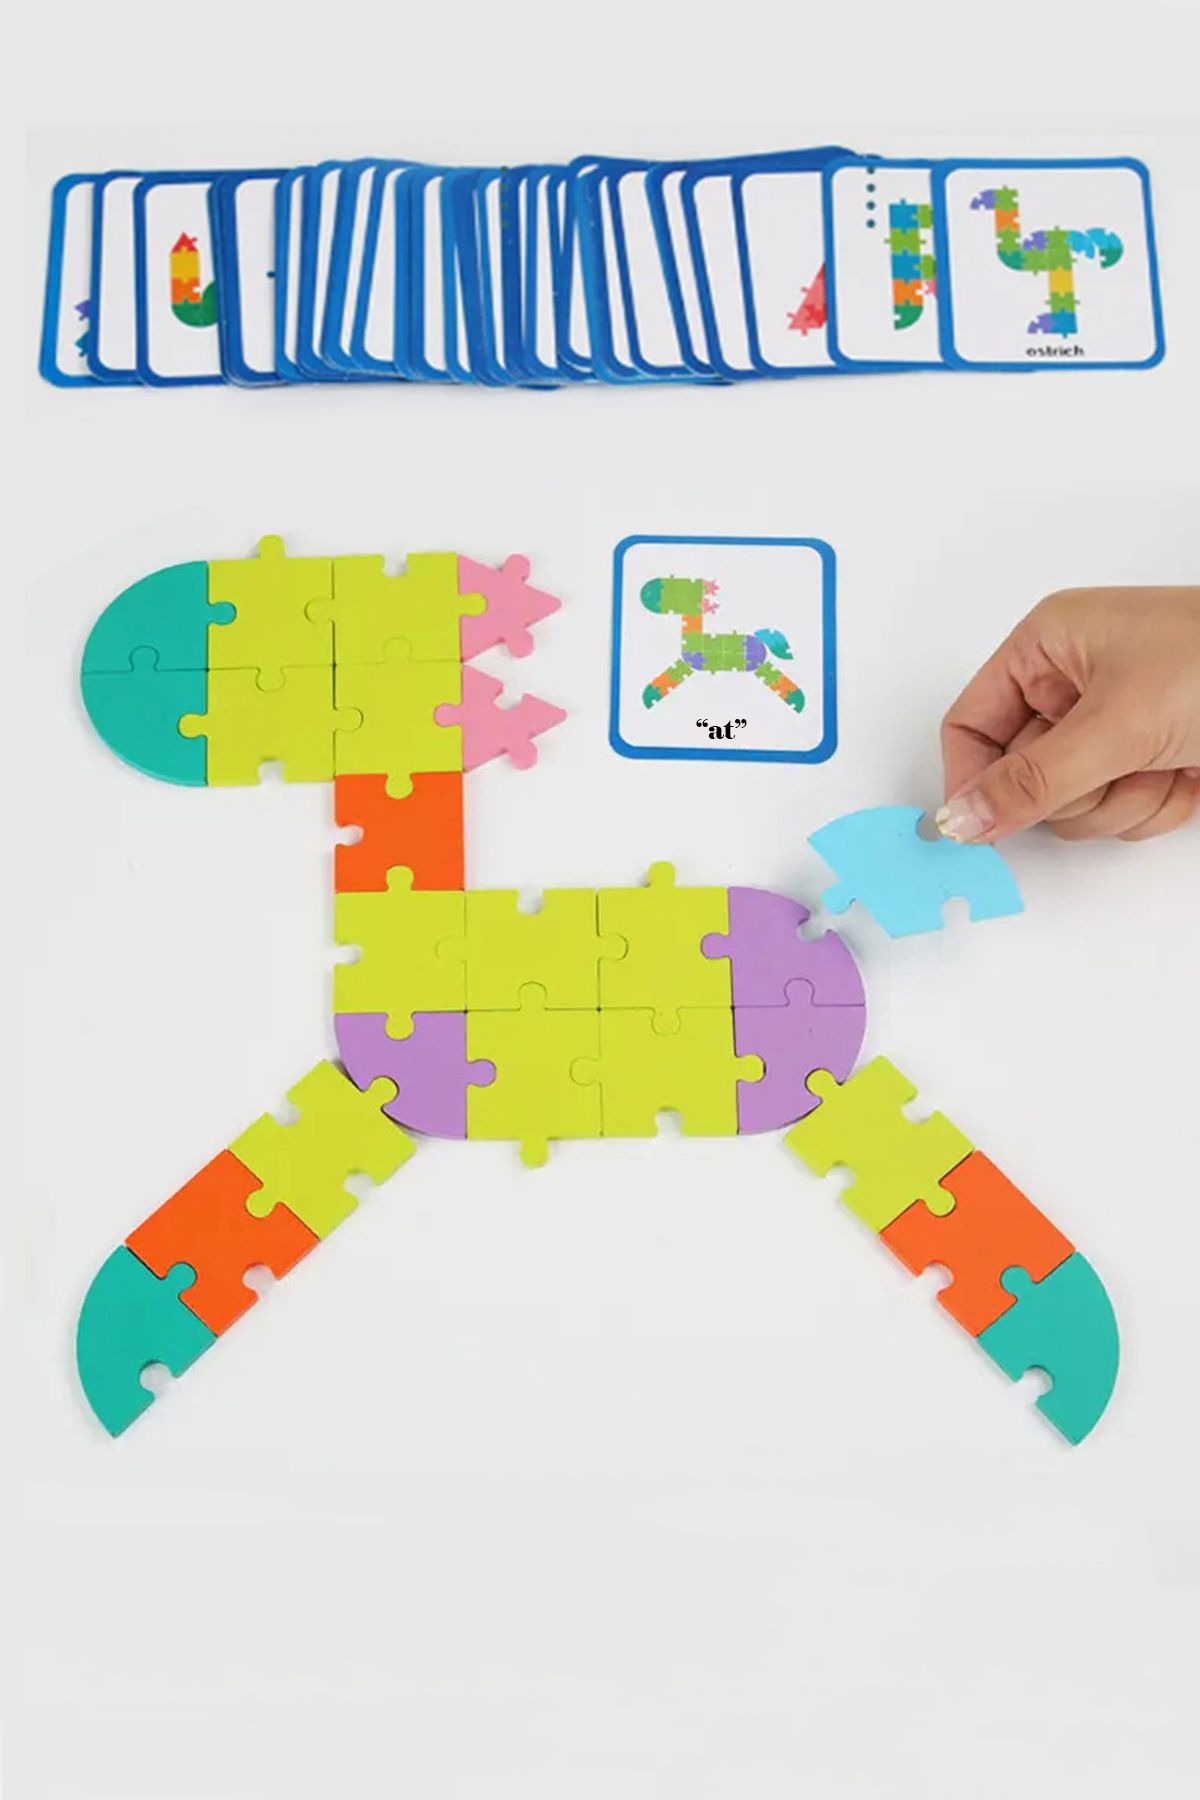 GONCA EĞİTİM Montessori Ahşap Renkli Puzzle Eğitici Oyuncak - Görsel Hafıza Eğitim Materyali